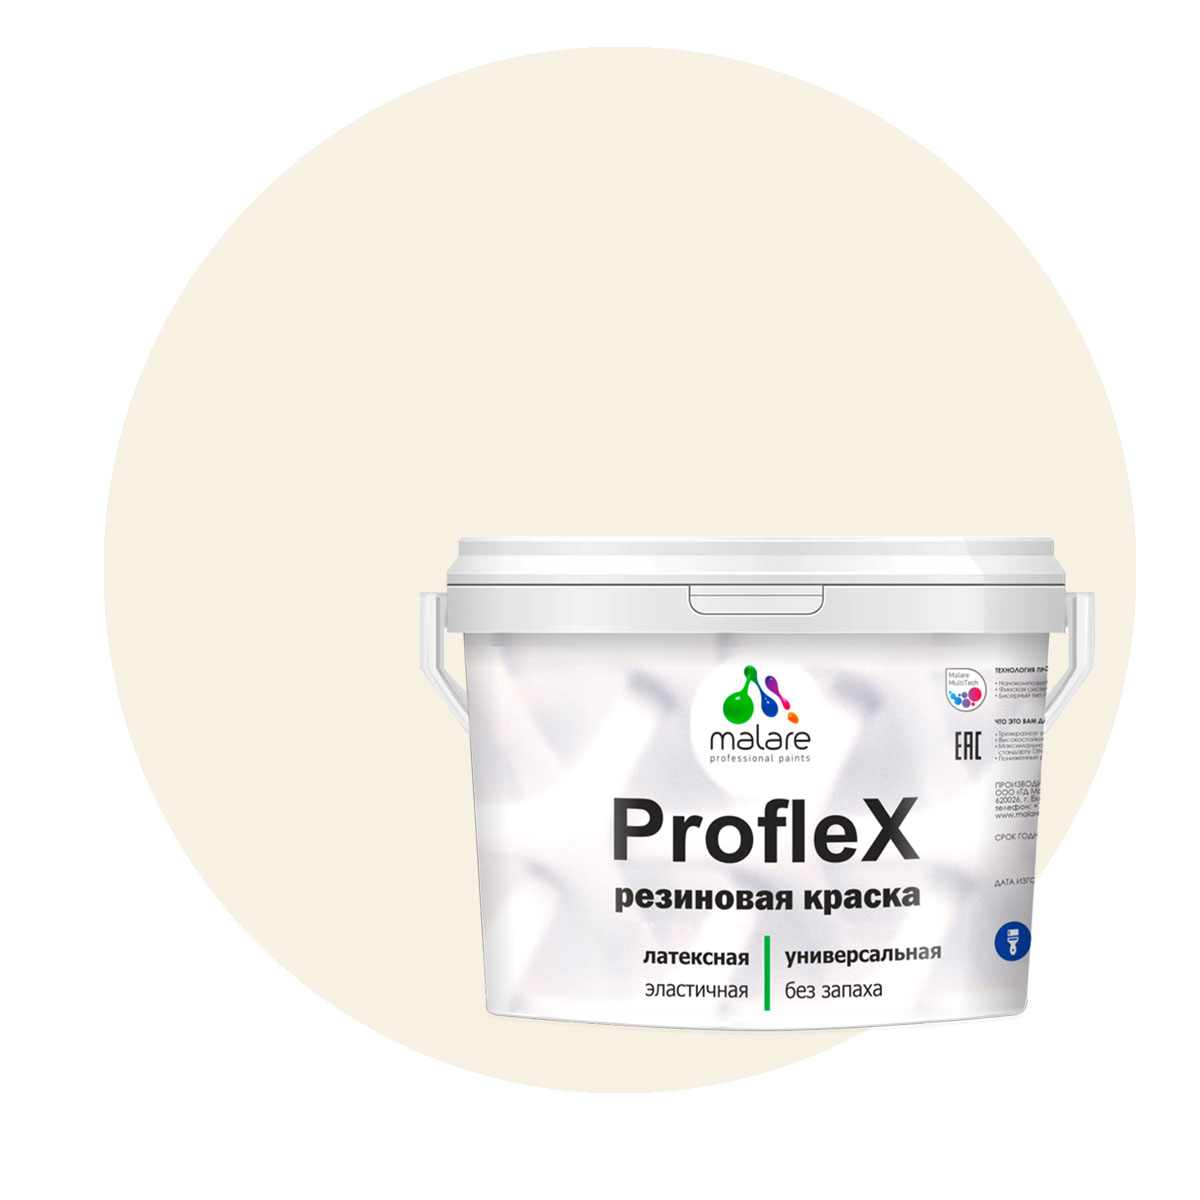 Краска Malare ProfleX для фасадов, интерьера, мебели, парное молоко, 1 кг.